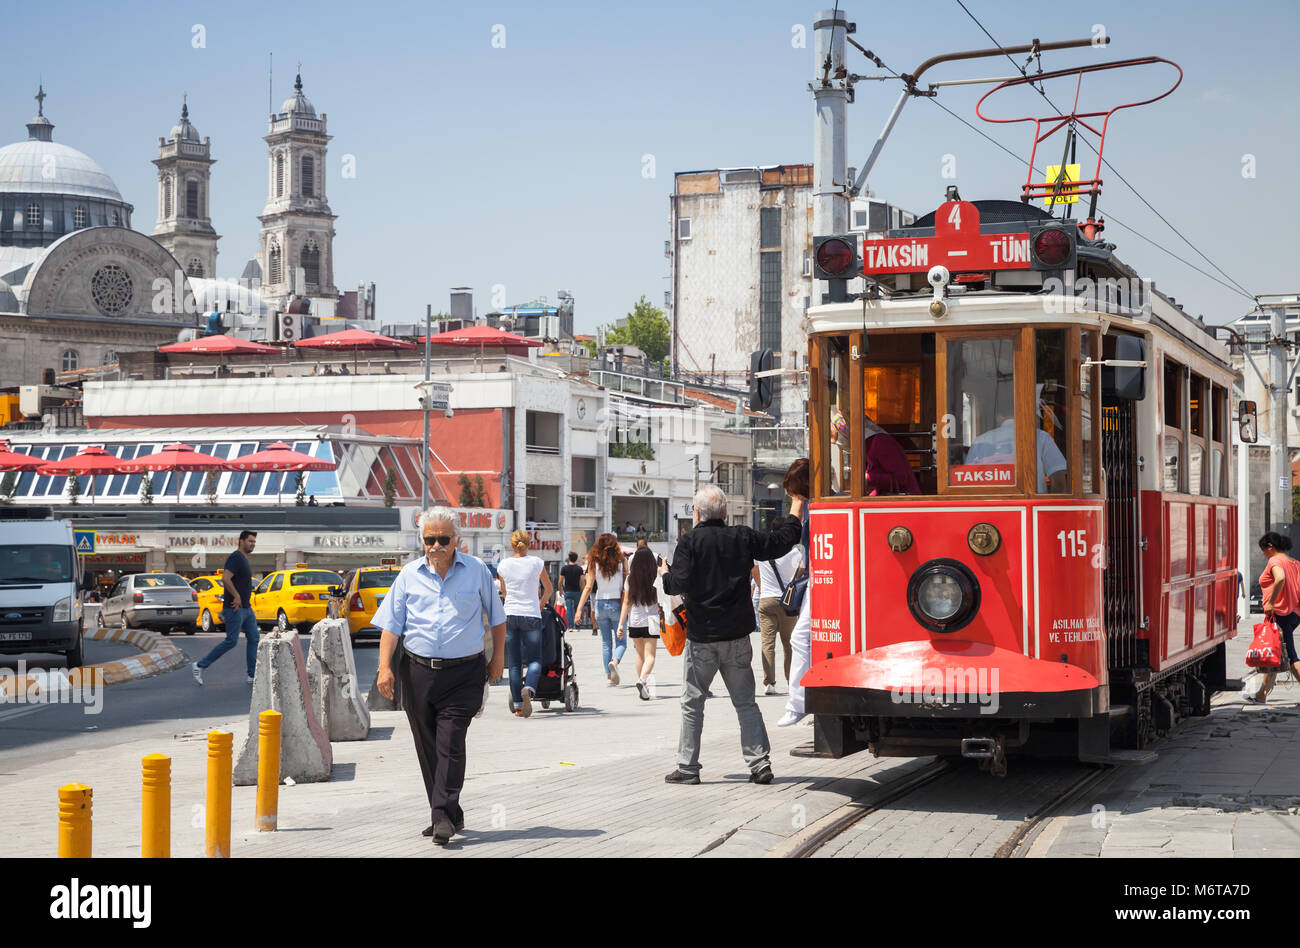 Istanbul, Türkei - 1. Juli 2016: Traditionelle rote Straßenbahn am Taksim-Platz in Istanbul, populäre öffentliche und touristischen Verkehr. Gewöhnliche Menschen zu Fuß Stockfoto